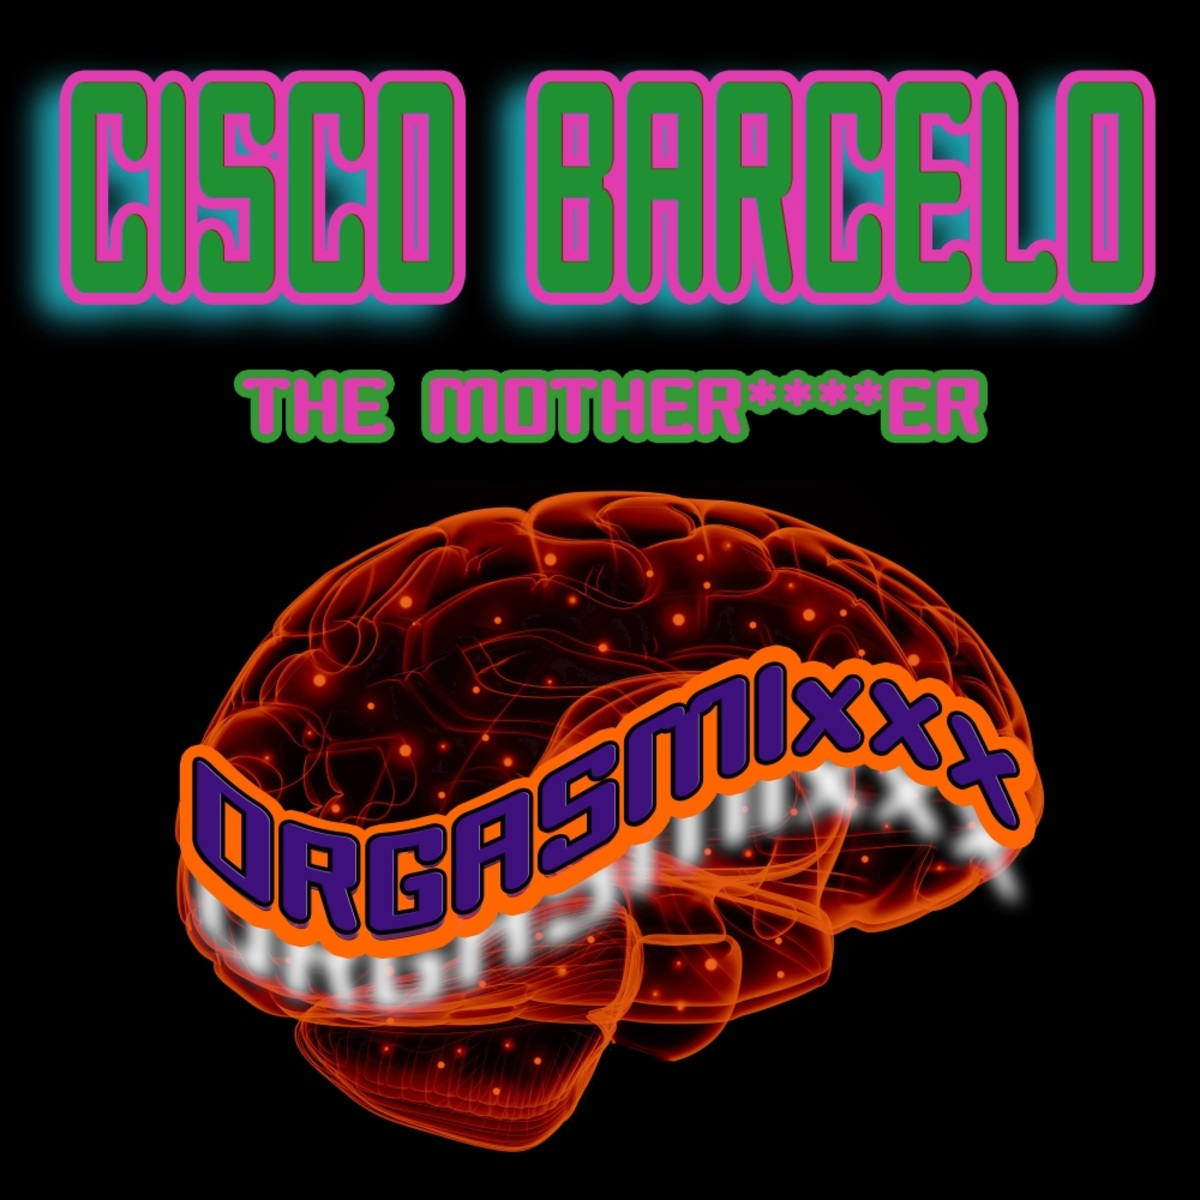 Cisco Barcelo - The Motherfucker / ORGASMIxxx